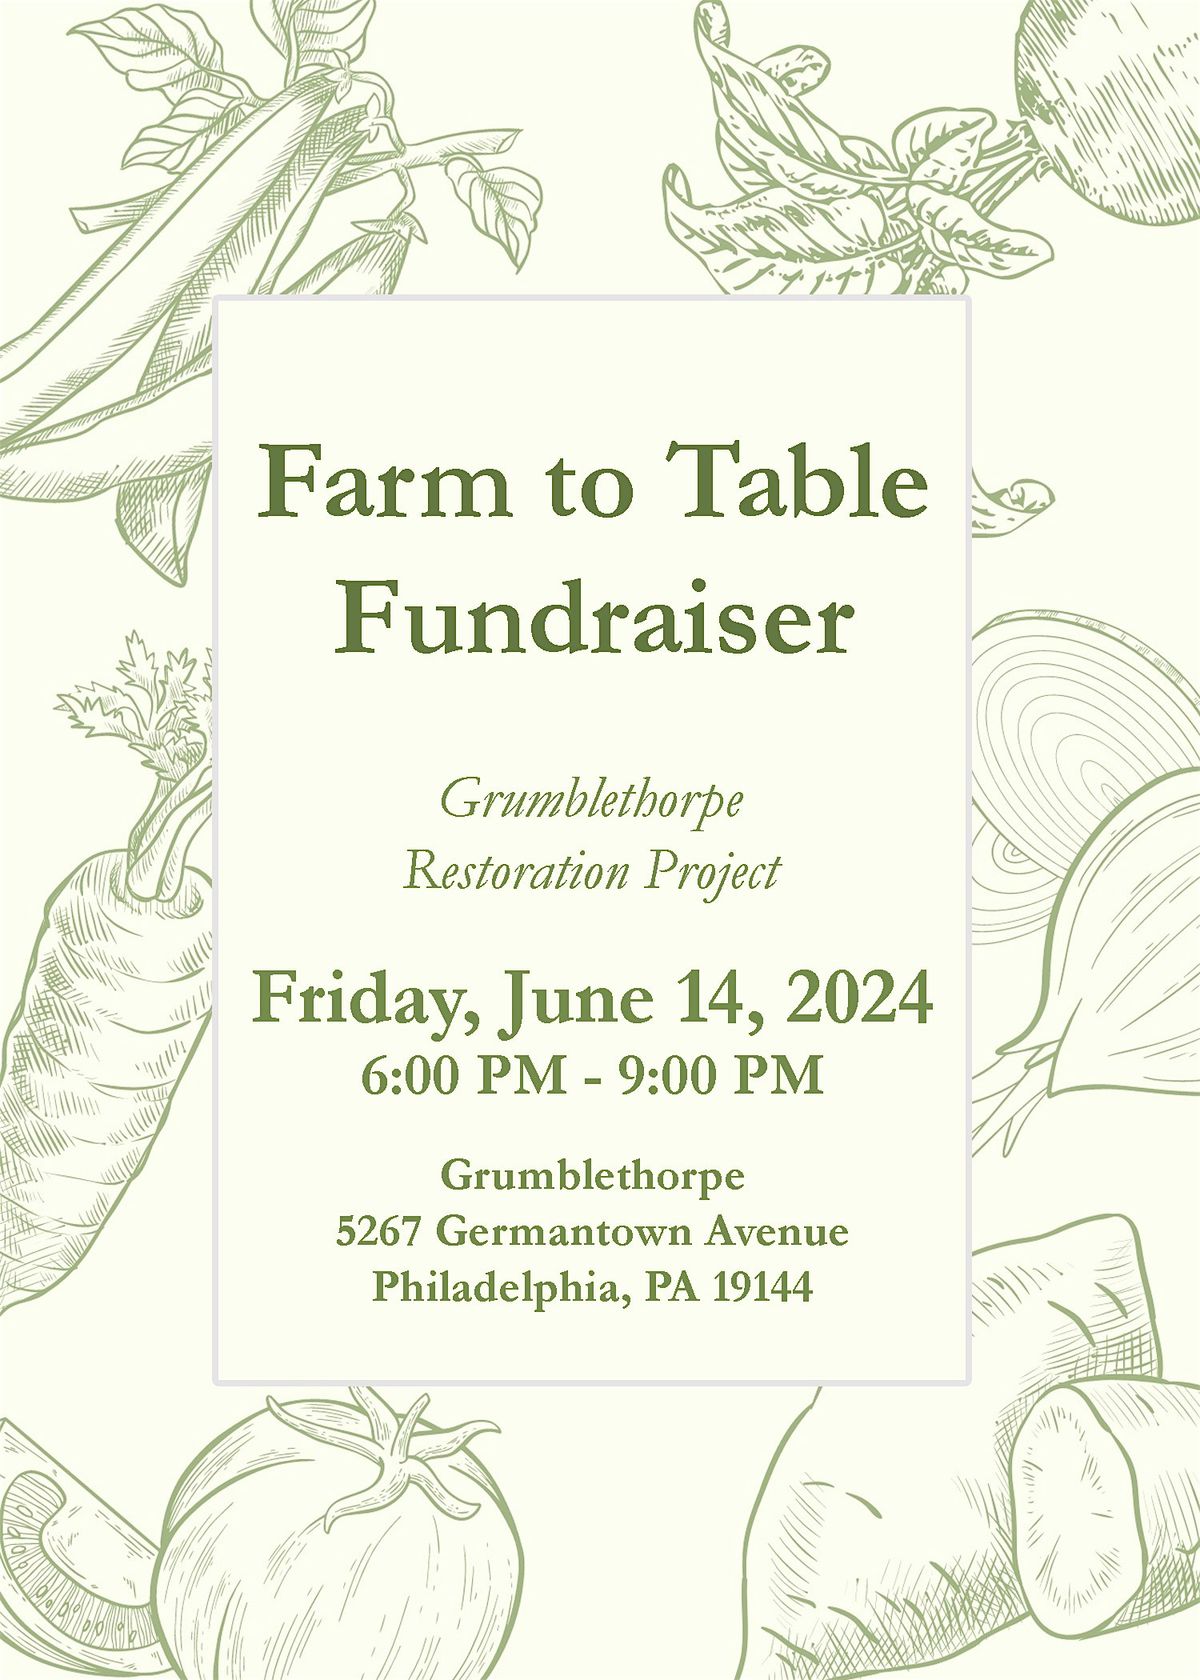 Farm to Table Fundraiser